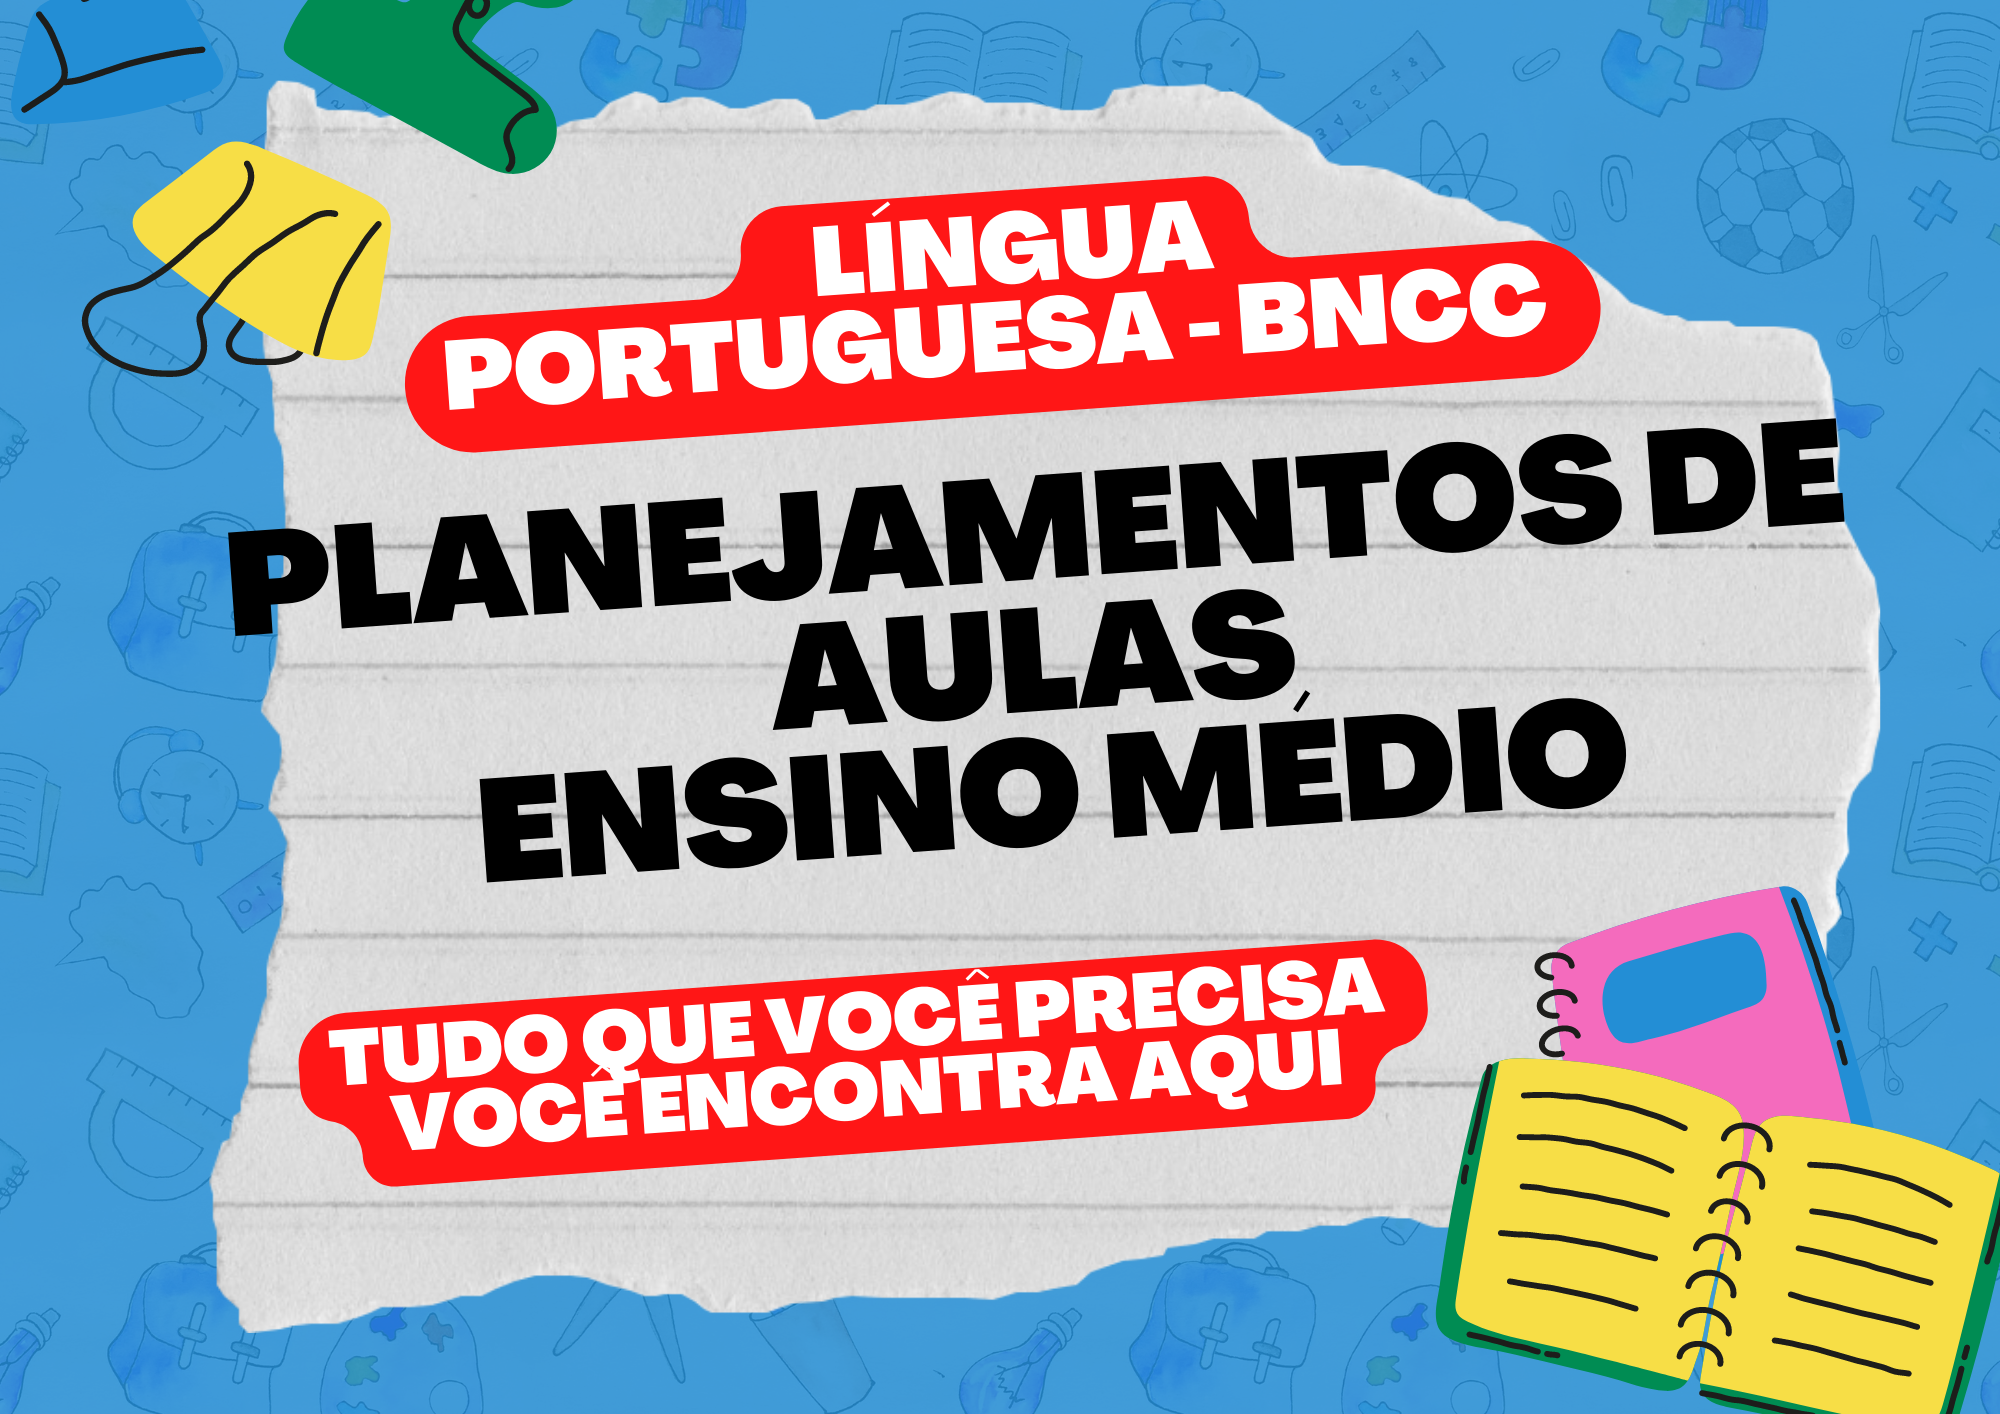 Língua portuguesa BNCC planejamento de aulas ensino médio tudo o que você precisa você encontra aqui